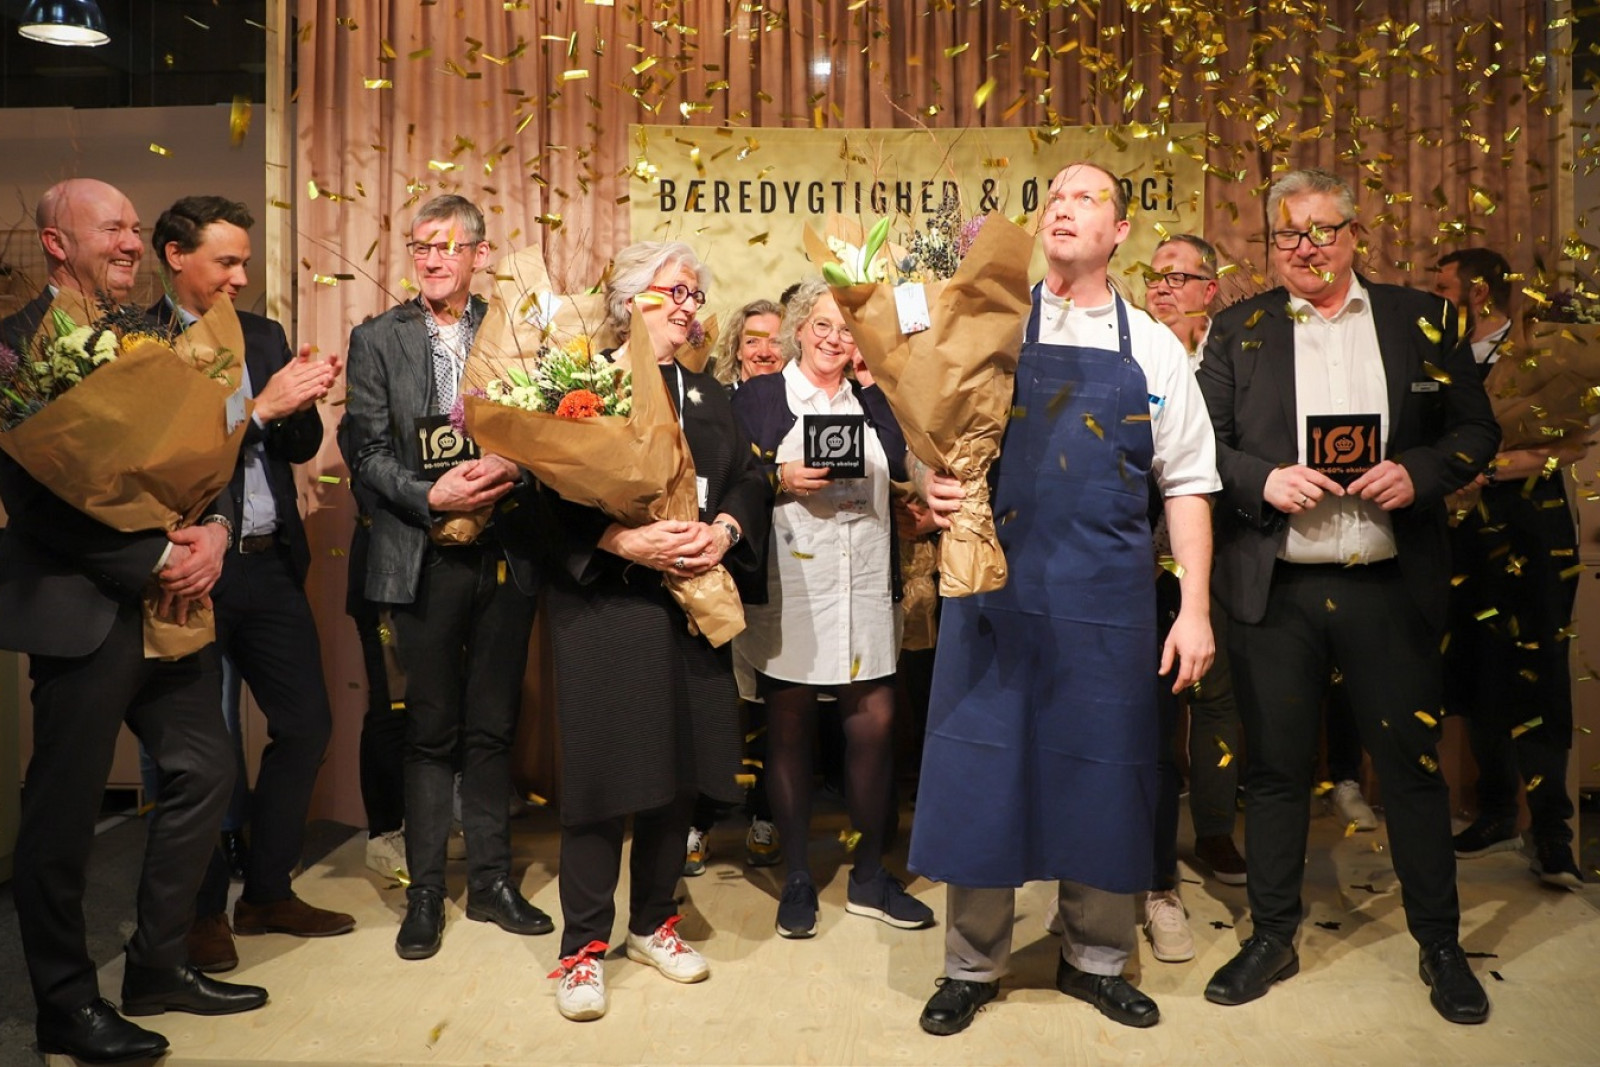 Guldkonfetti drysser ned over de ansatte fra køkkenerne, som bliver hyldet på scenen på Foodexpo